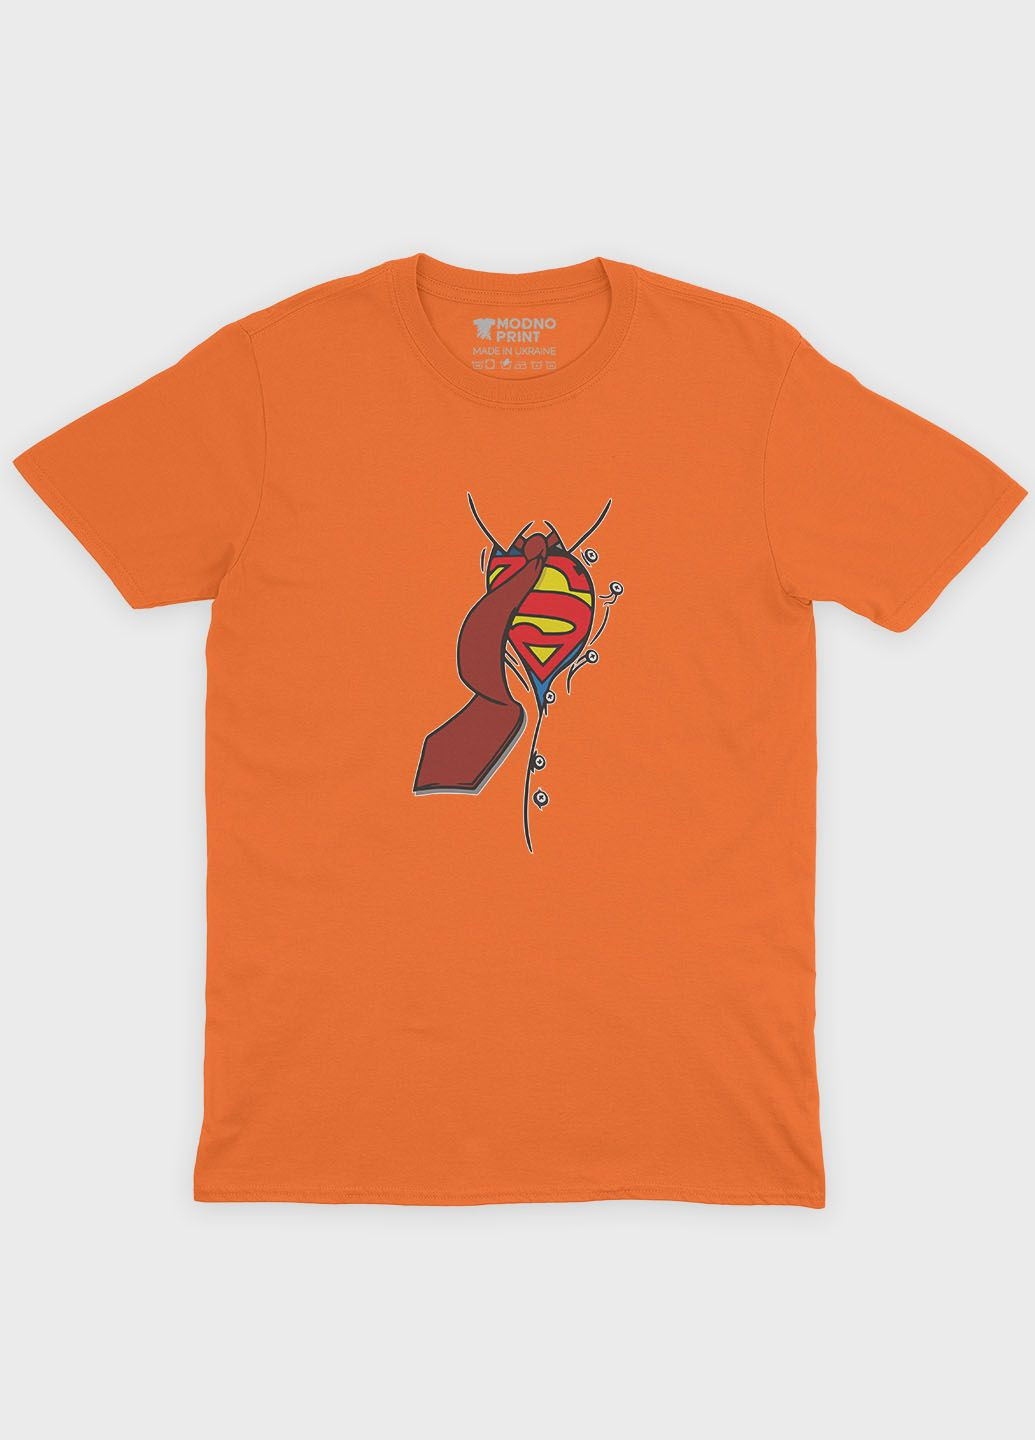 Помаранчева демісезонна футболка для хлопчика з принтом супергероя - супермен (ts001-1-ora-006-009-002-b) Modno